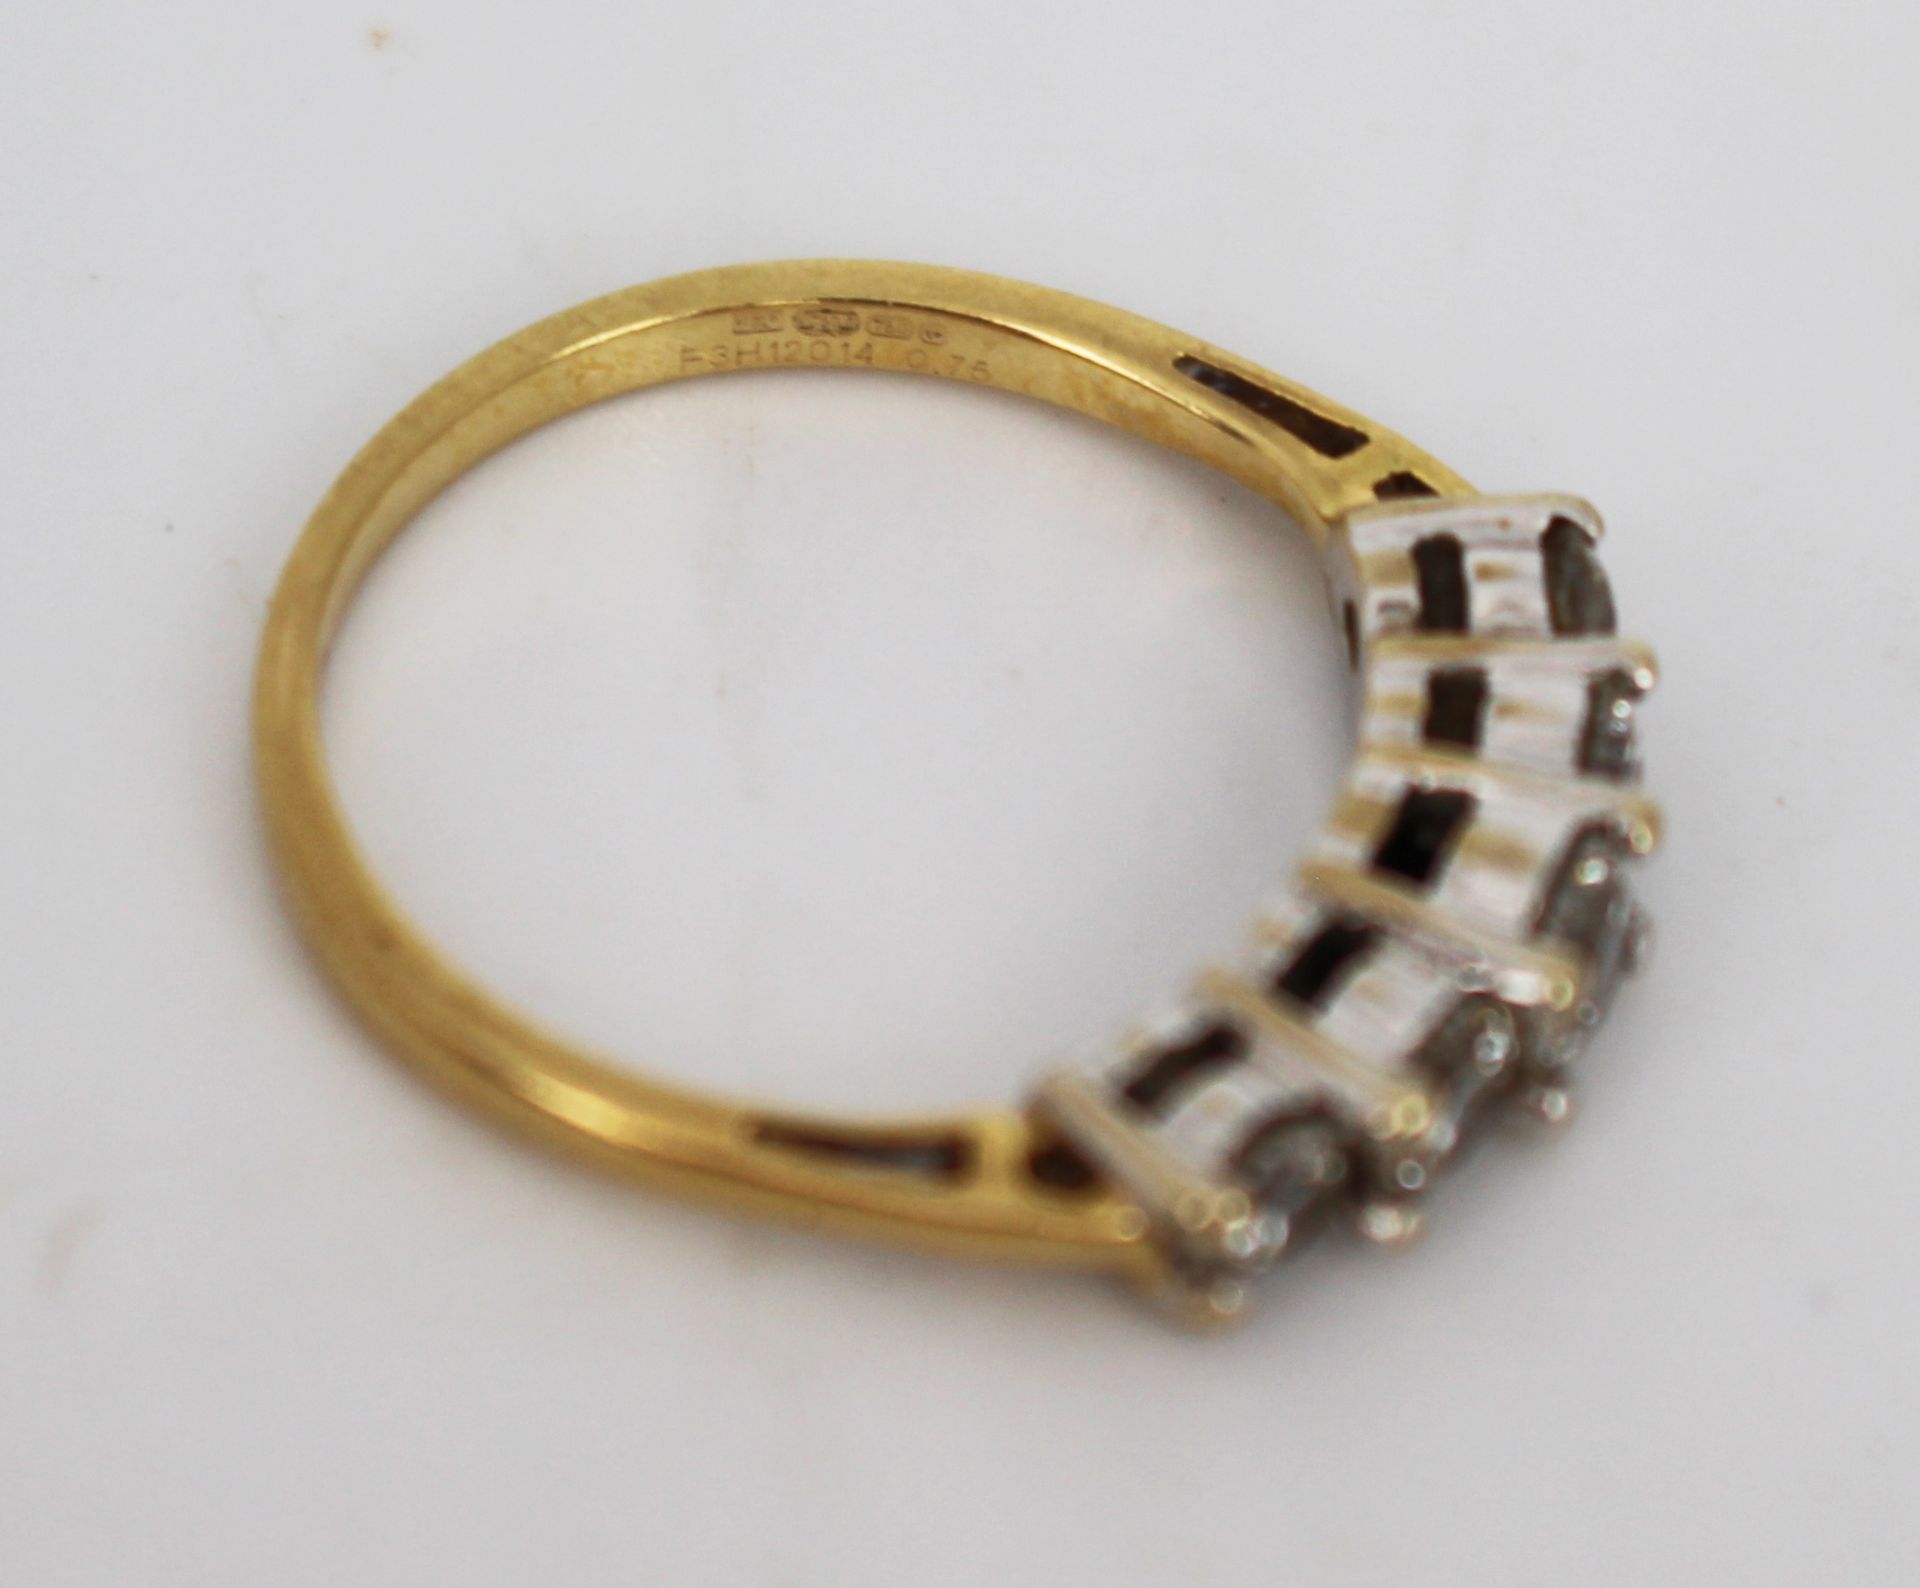 0.75 Carat Diamond 18ct Gold Ring - Image 3 of 6